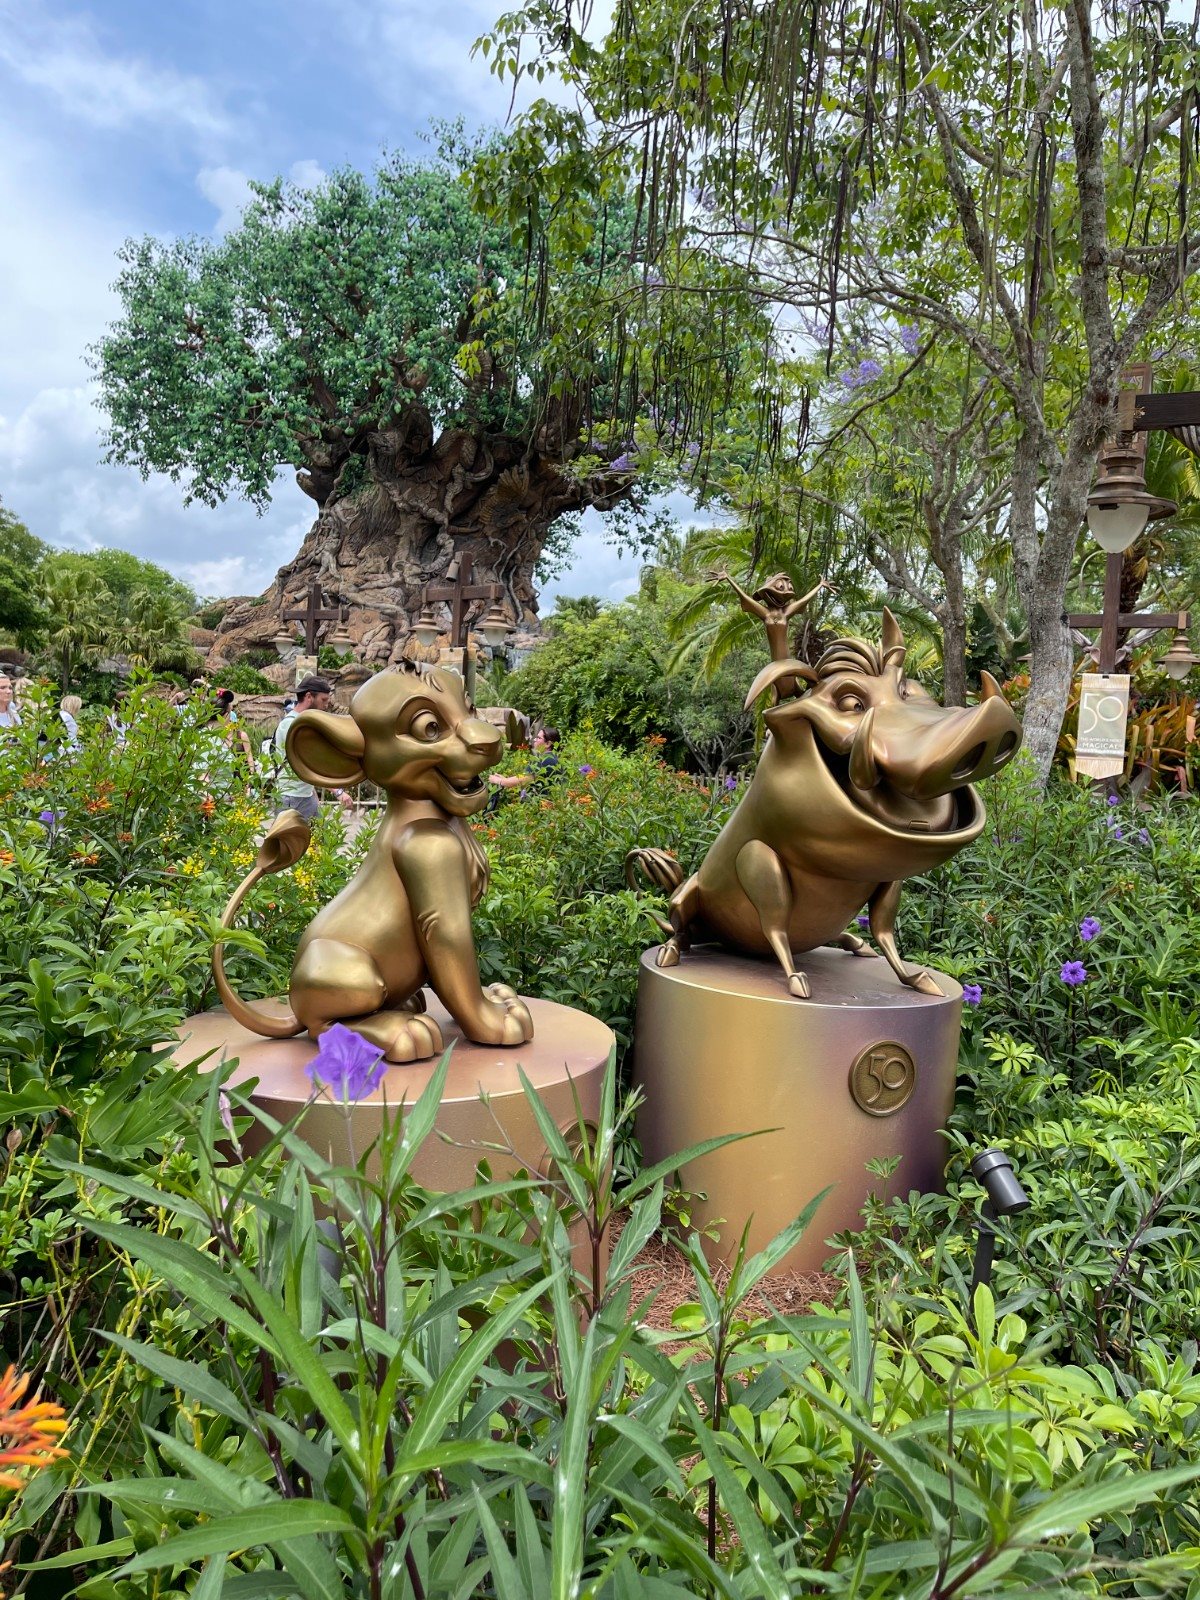 Estátuas douradas, como a que reúne Simba, Pumba e Timão em frente à Árvore da Vida, no Animal Kingdom, celebram os 50 anos de WDW